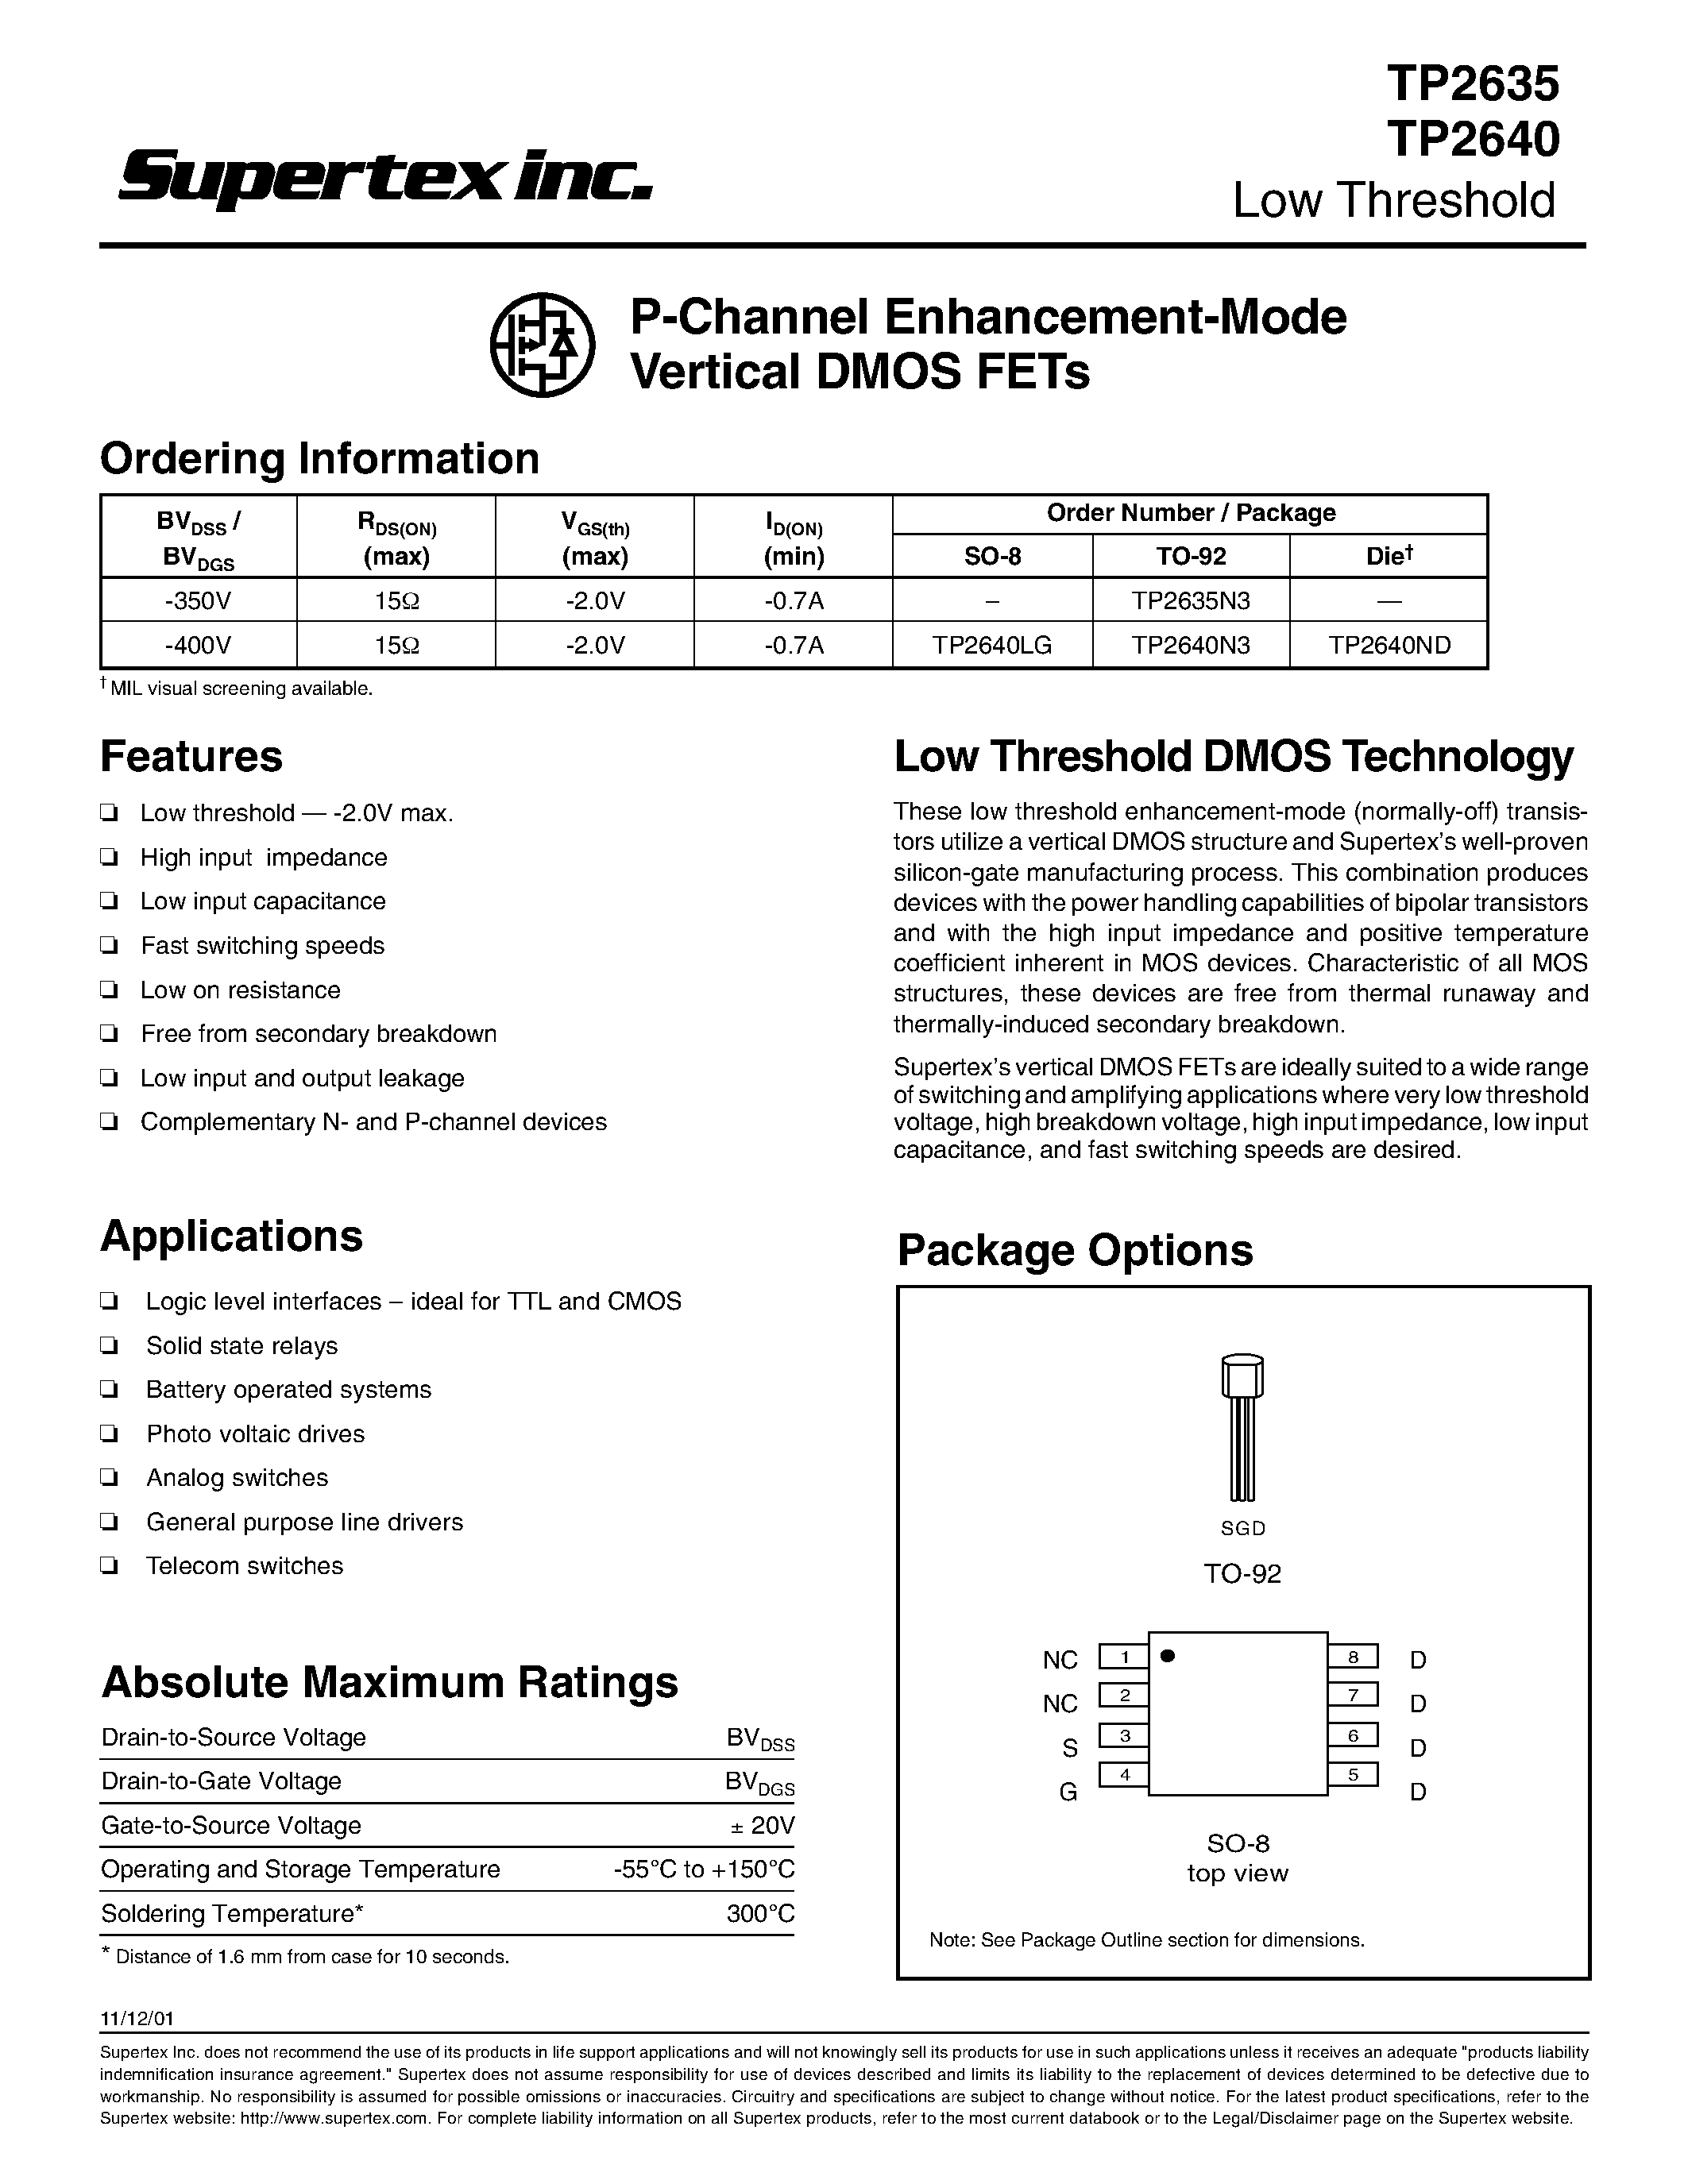 Даташит TP2635 - P-Channel Enhancement-Mode Vertical DMOS FETs страница 1